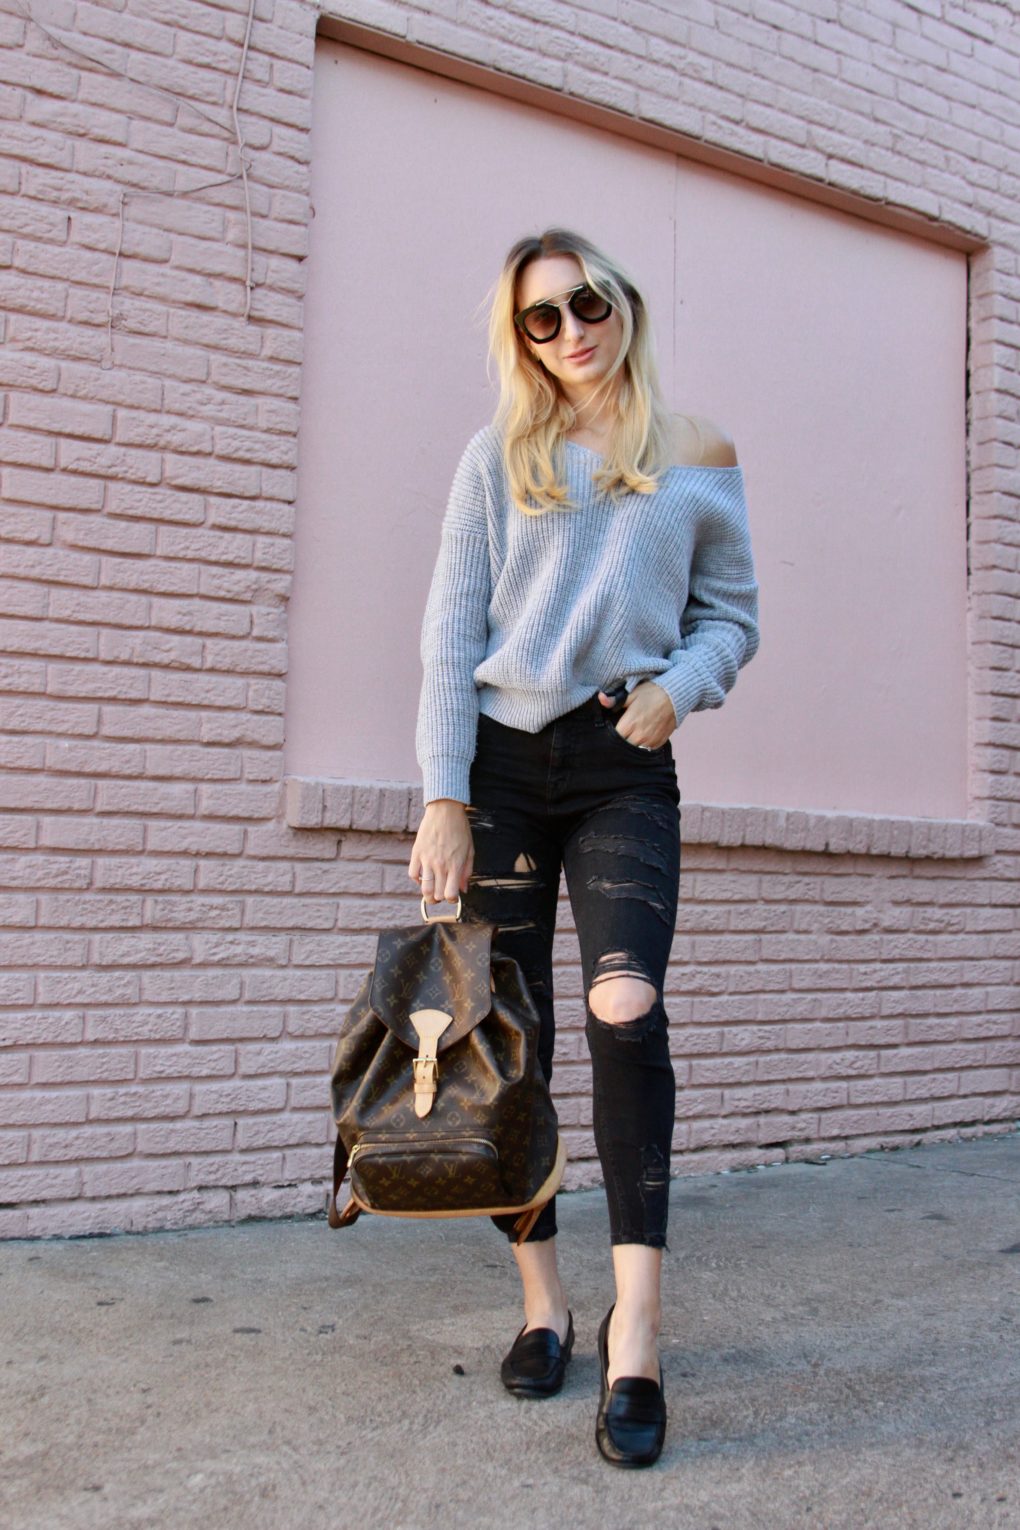 LV Monogram Backpack and Drop Shoulder Sweater - Chiara